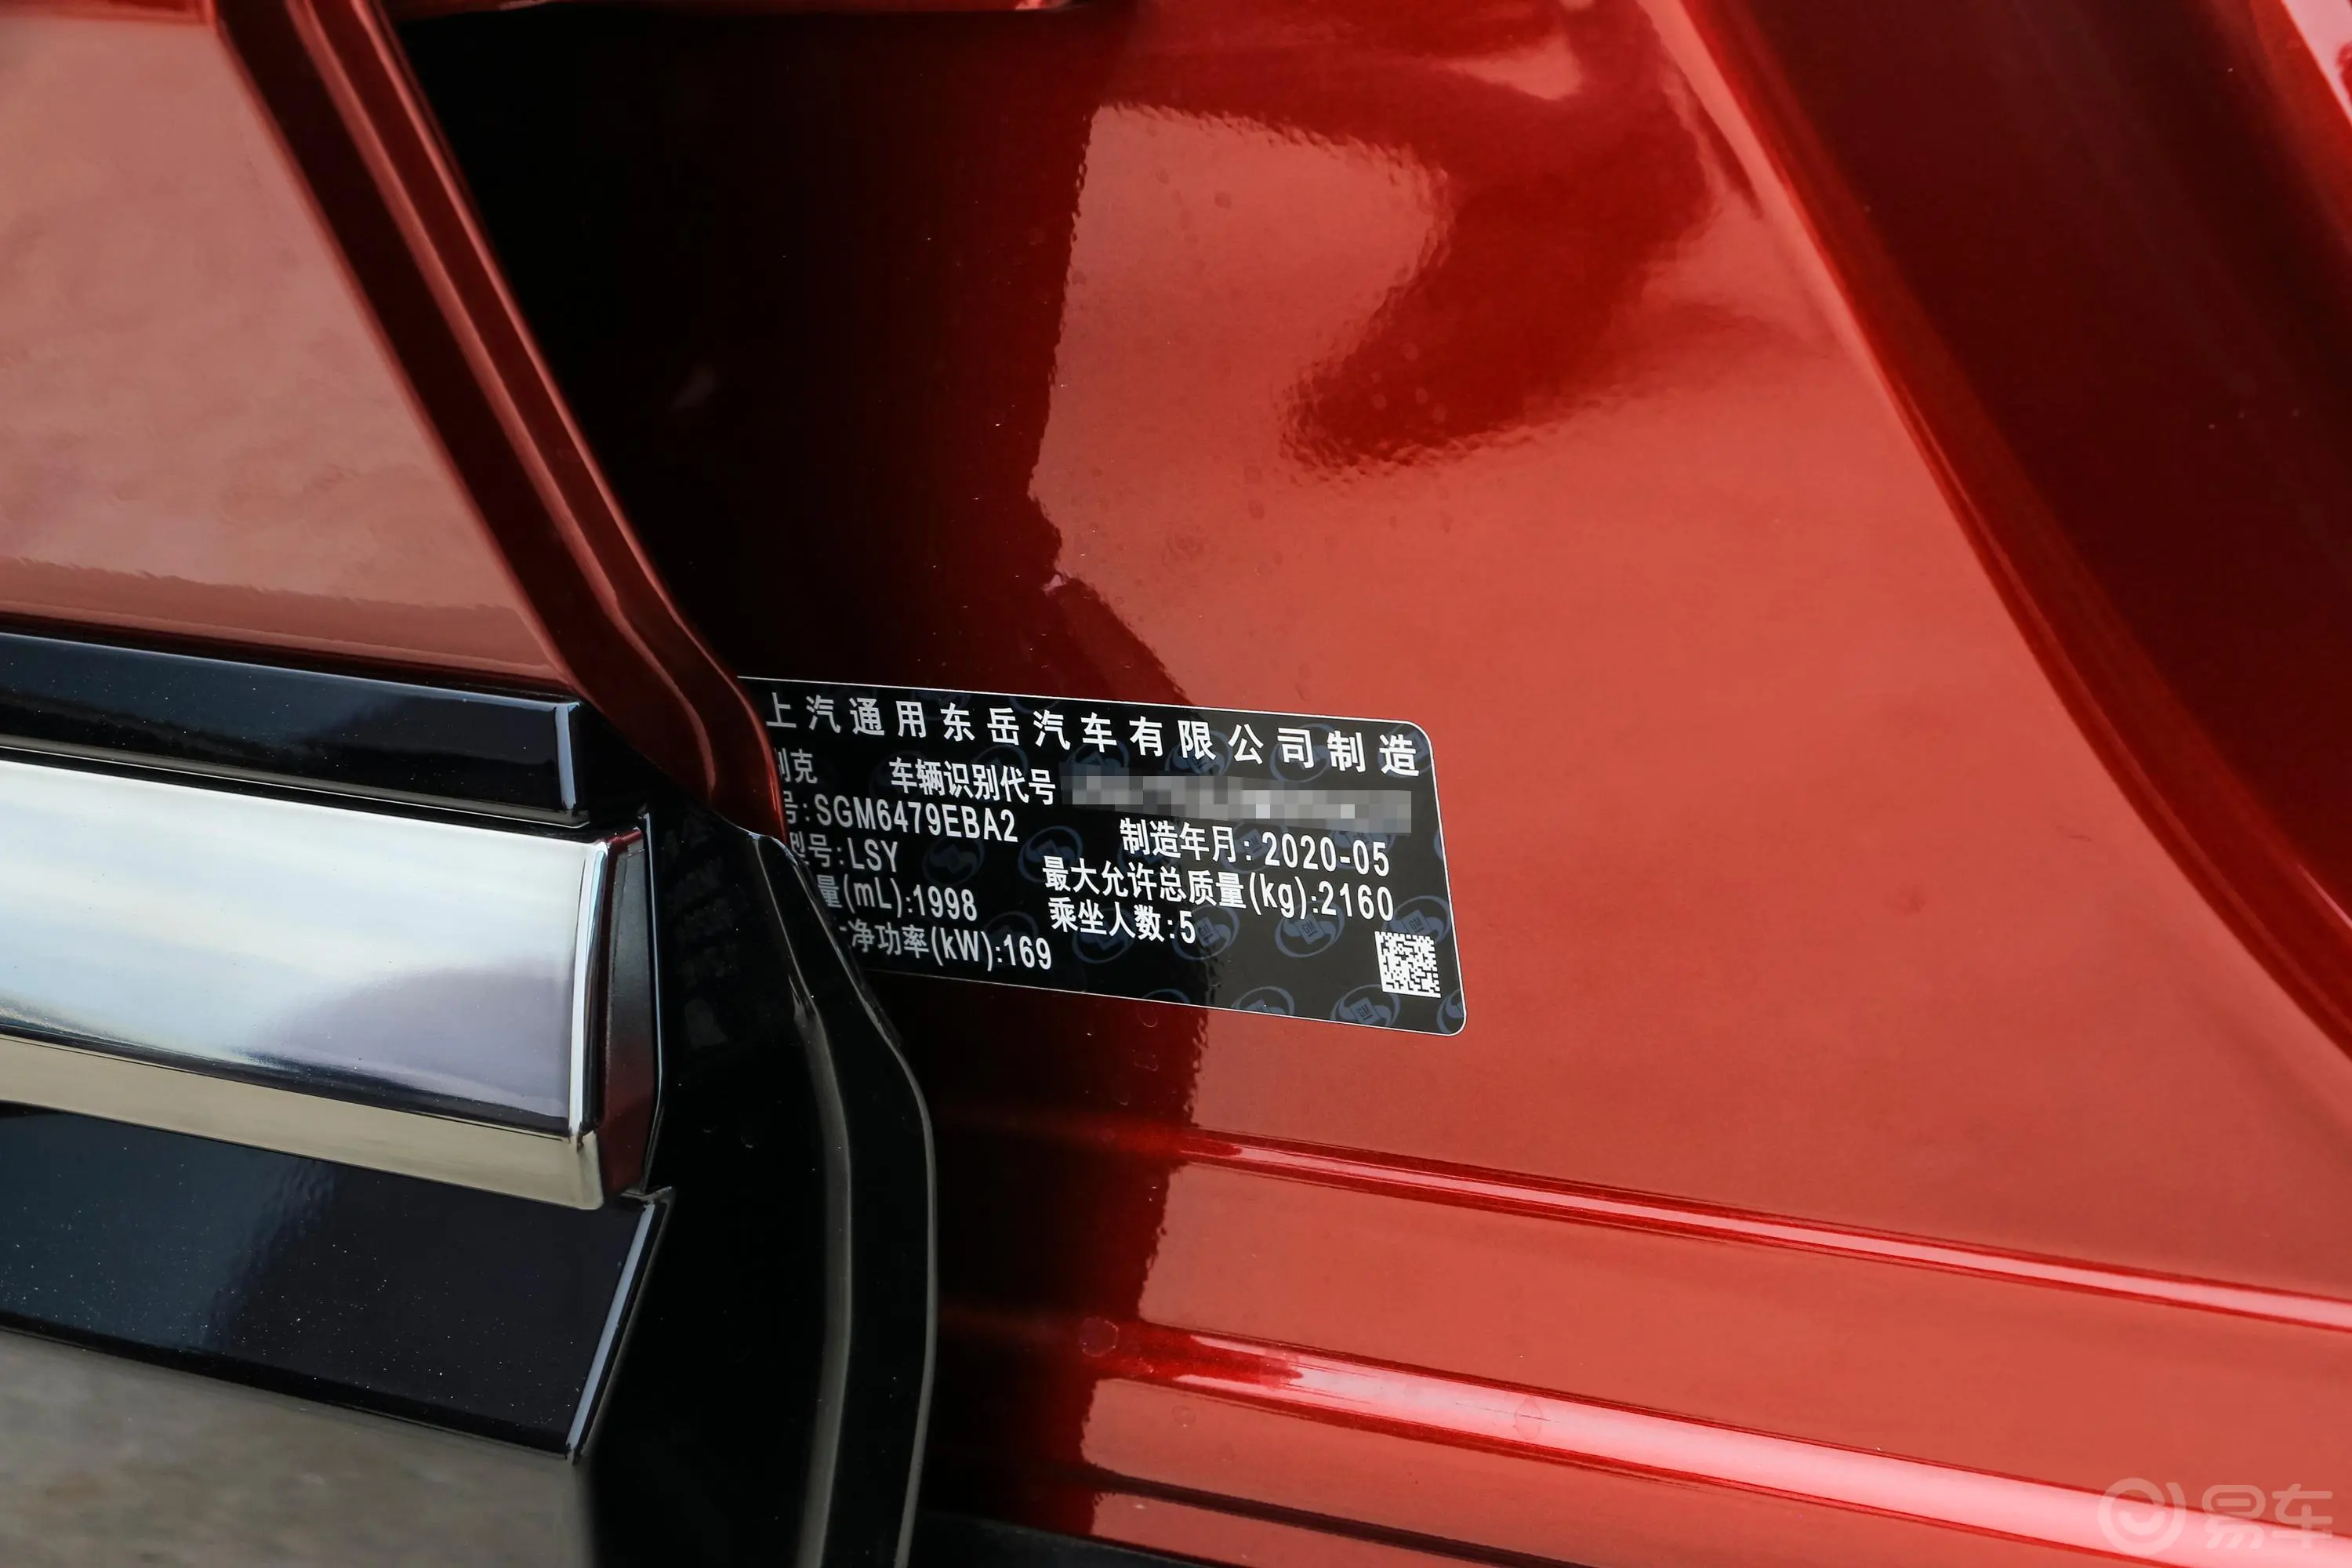 昂科威昂科威S 652T 两驱 限量S运动版车辆信息铭牌